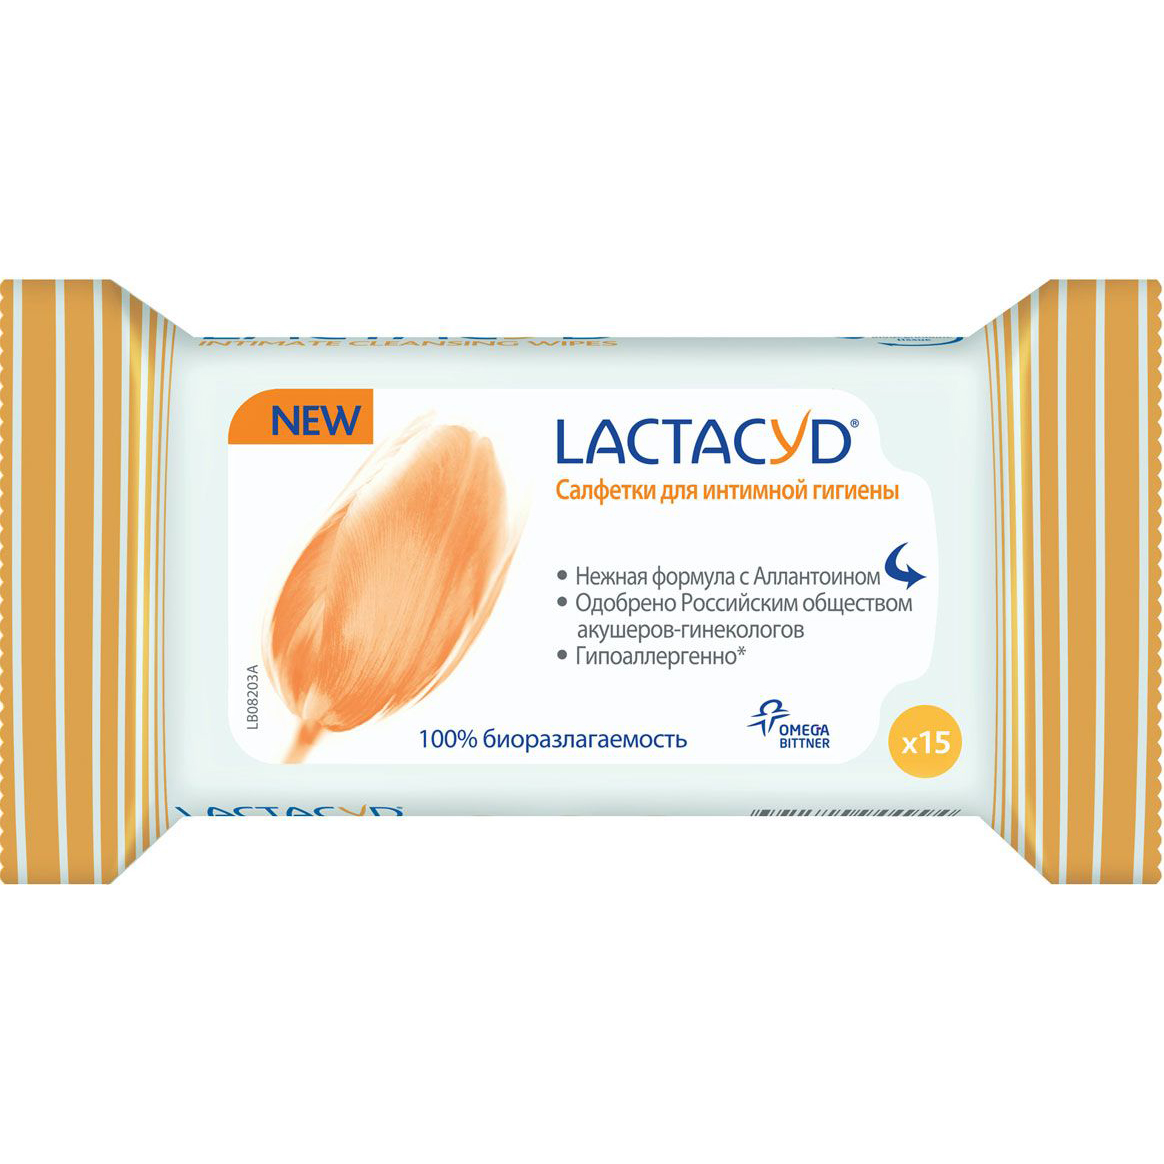 Салфетки для интимной гигиены Lactacyd 15 шт влажные салфетки для лаковой кожи collonil